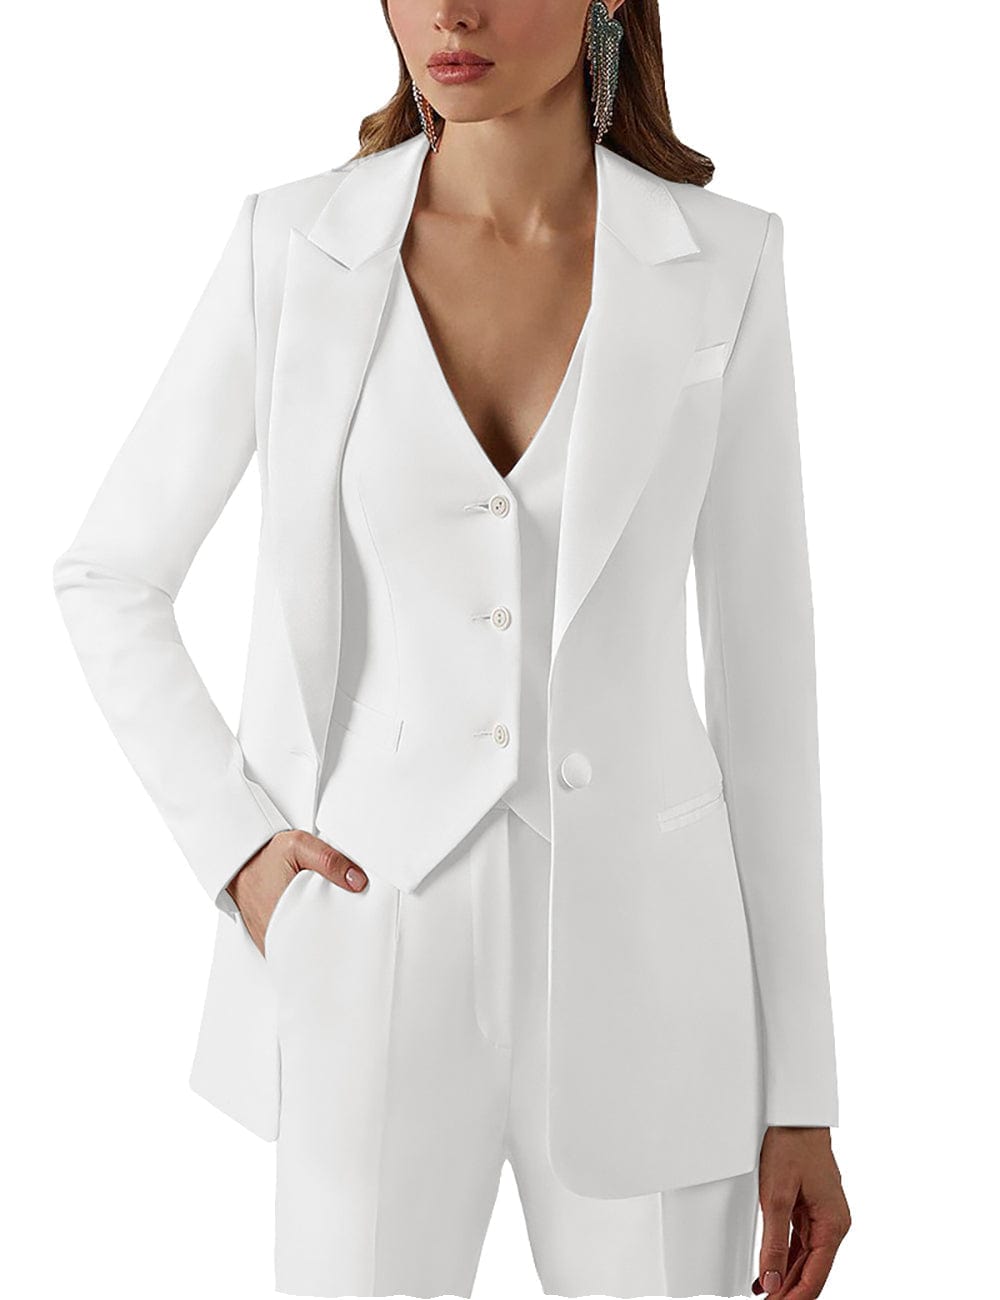 White Women Suits 3 Piece Women Pantsuits Ol Women's Summer Suit Women Blazer  Jacket & Trousers & Vest Suit For Women Set - Pant Suits - AliExpress